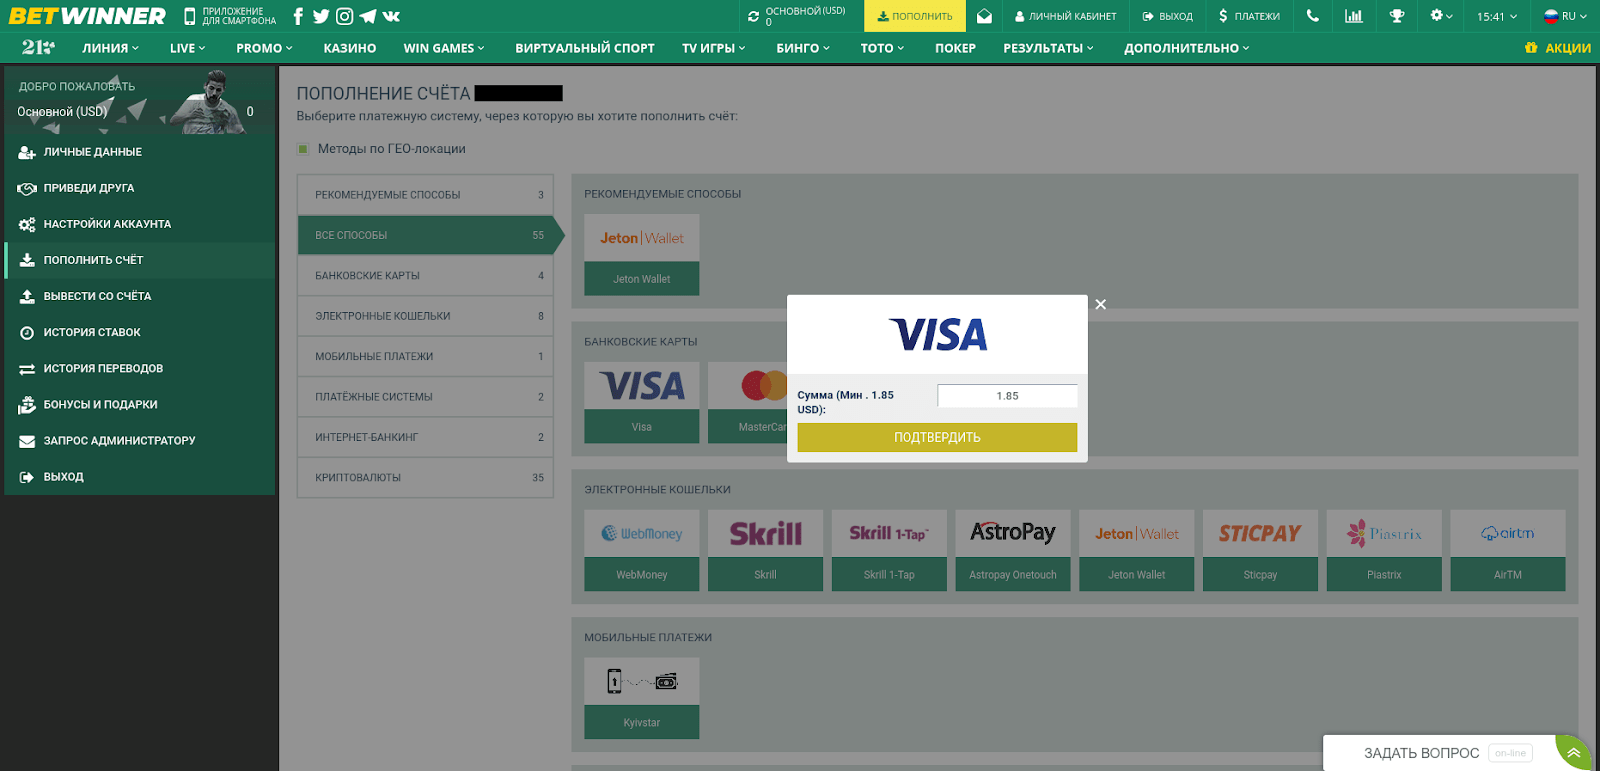 Пополнение счёта Betwinner банковской картой VISA, шаг первый